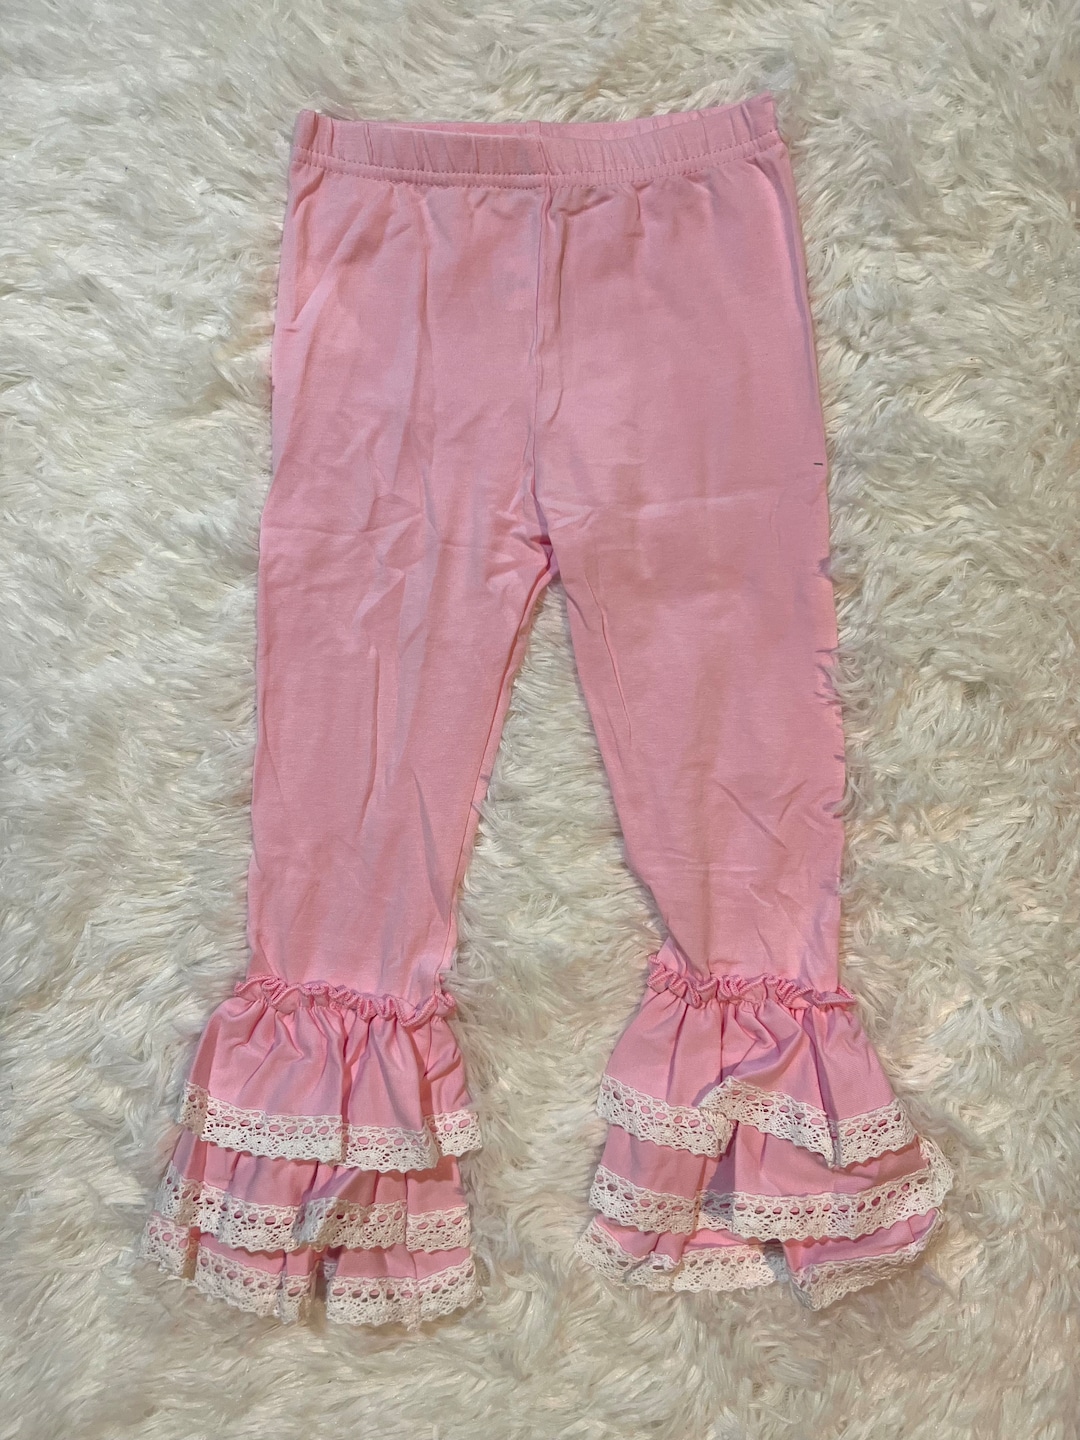 Pink Lace Ruffle Legging - Etsy